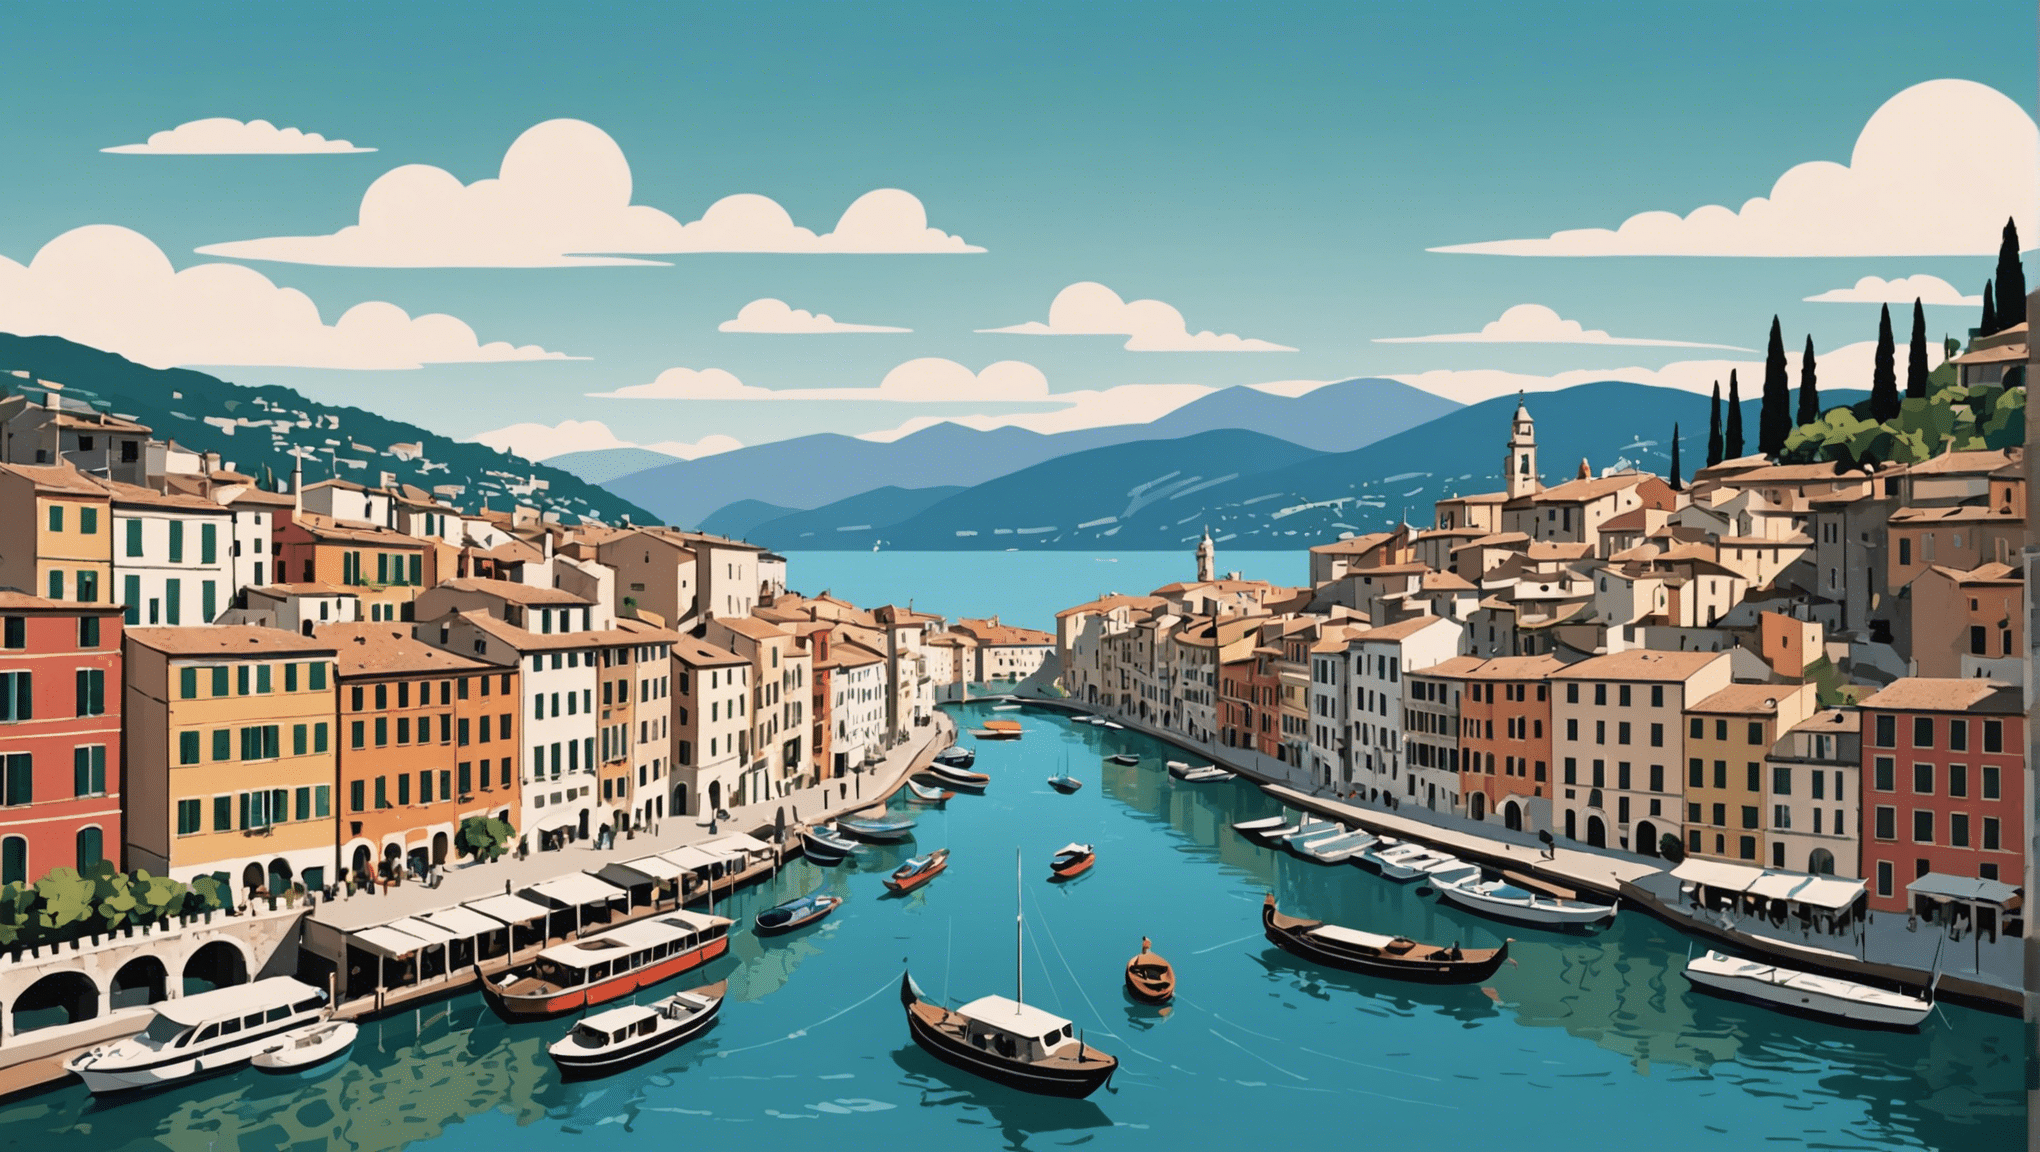 芸術的な宝物、美食、文化、息を呑むような風景など、忘れられないイタリア旅行に欠かせないものを発見してください。